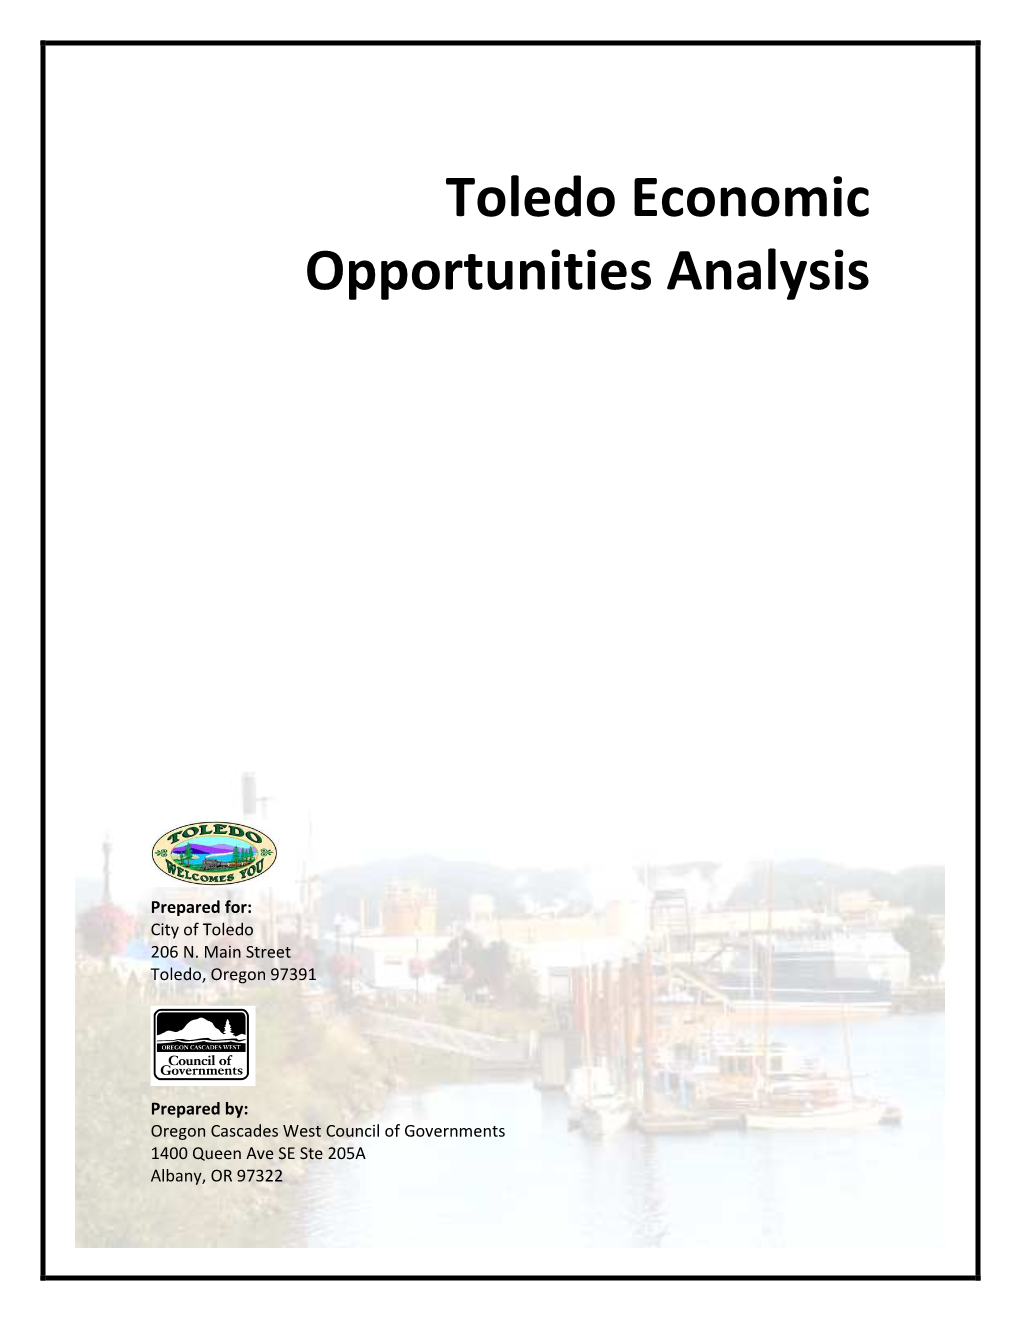 2010 Toledo Economic Opportunities Analysis With